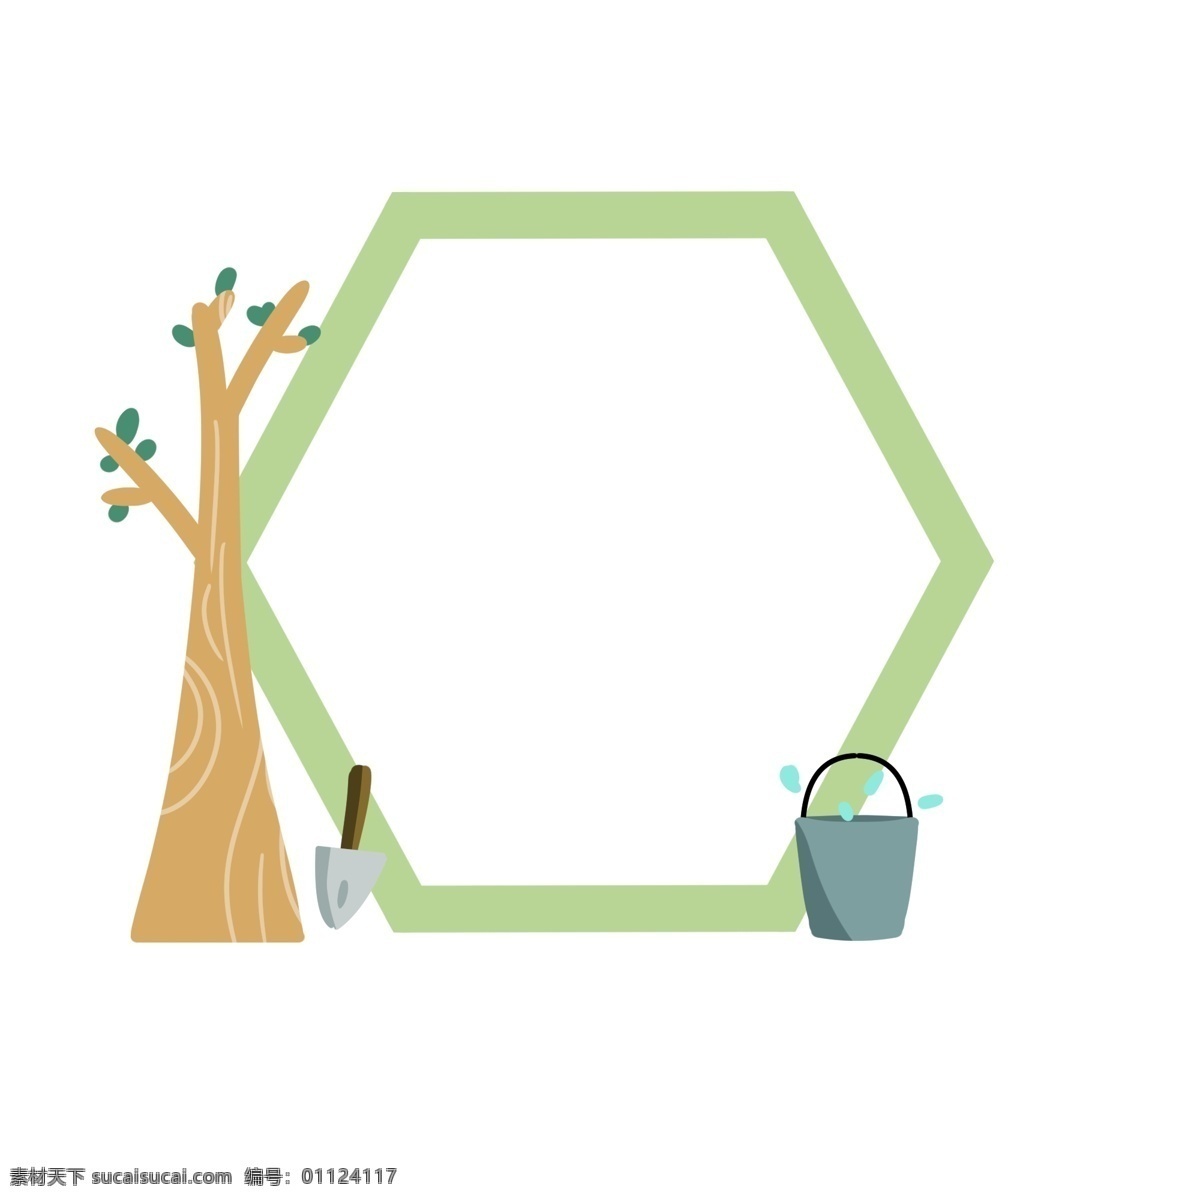 绿色植物 边框 插图 绿色叶子 棕色树木 灰色水桶 银色铁锹 绿色边框 精美的边框 盛开的树木 卡通插图